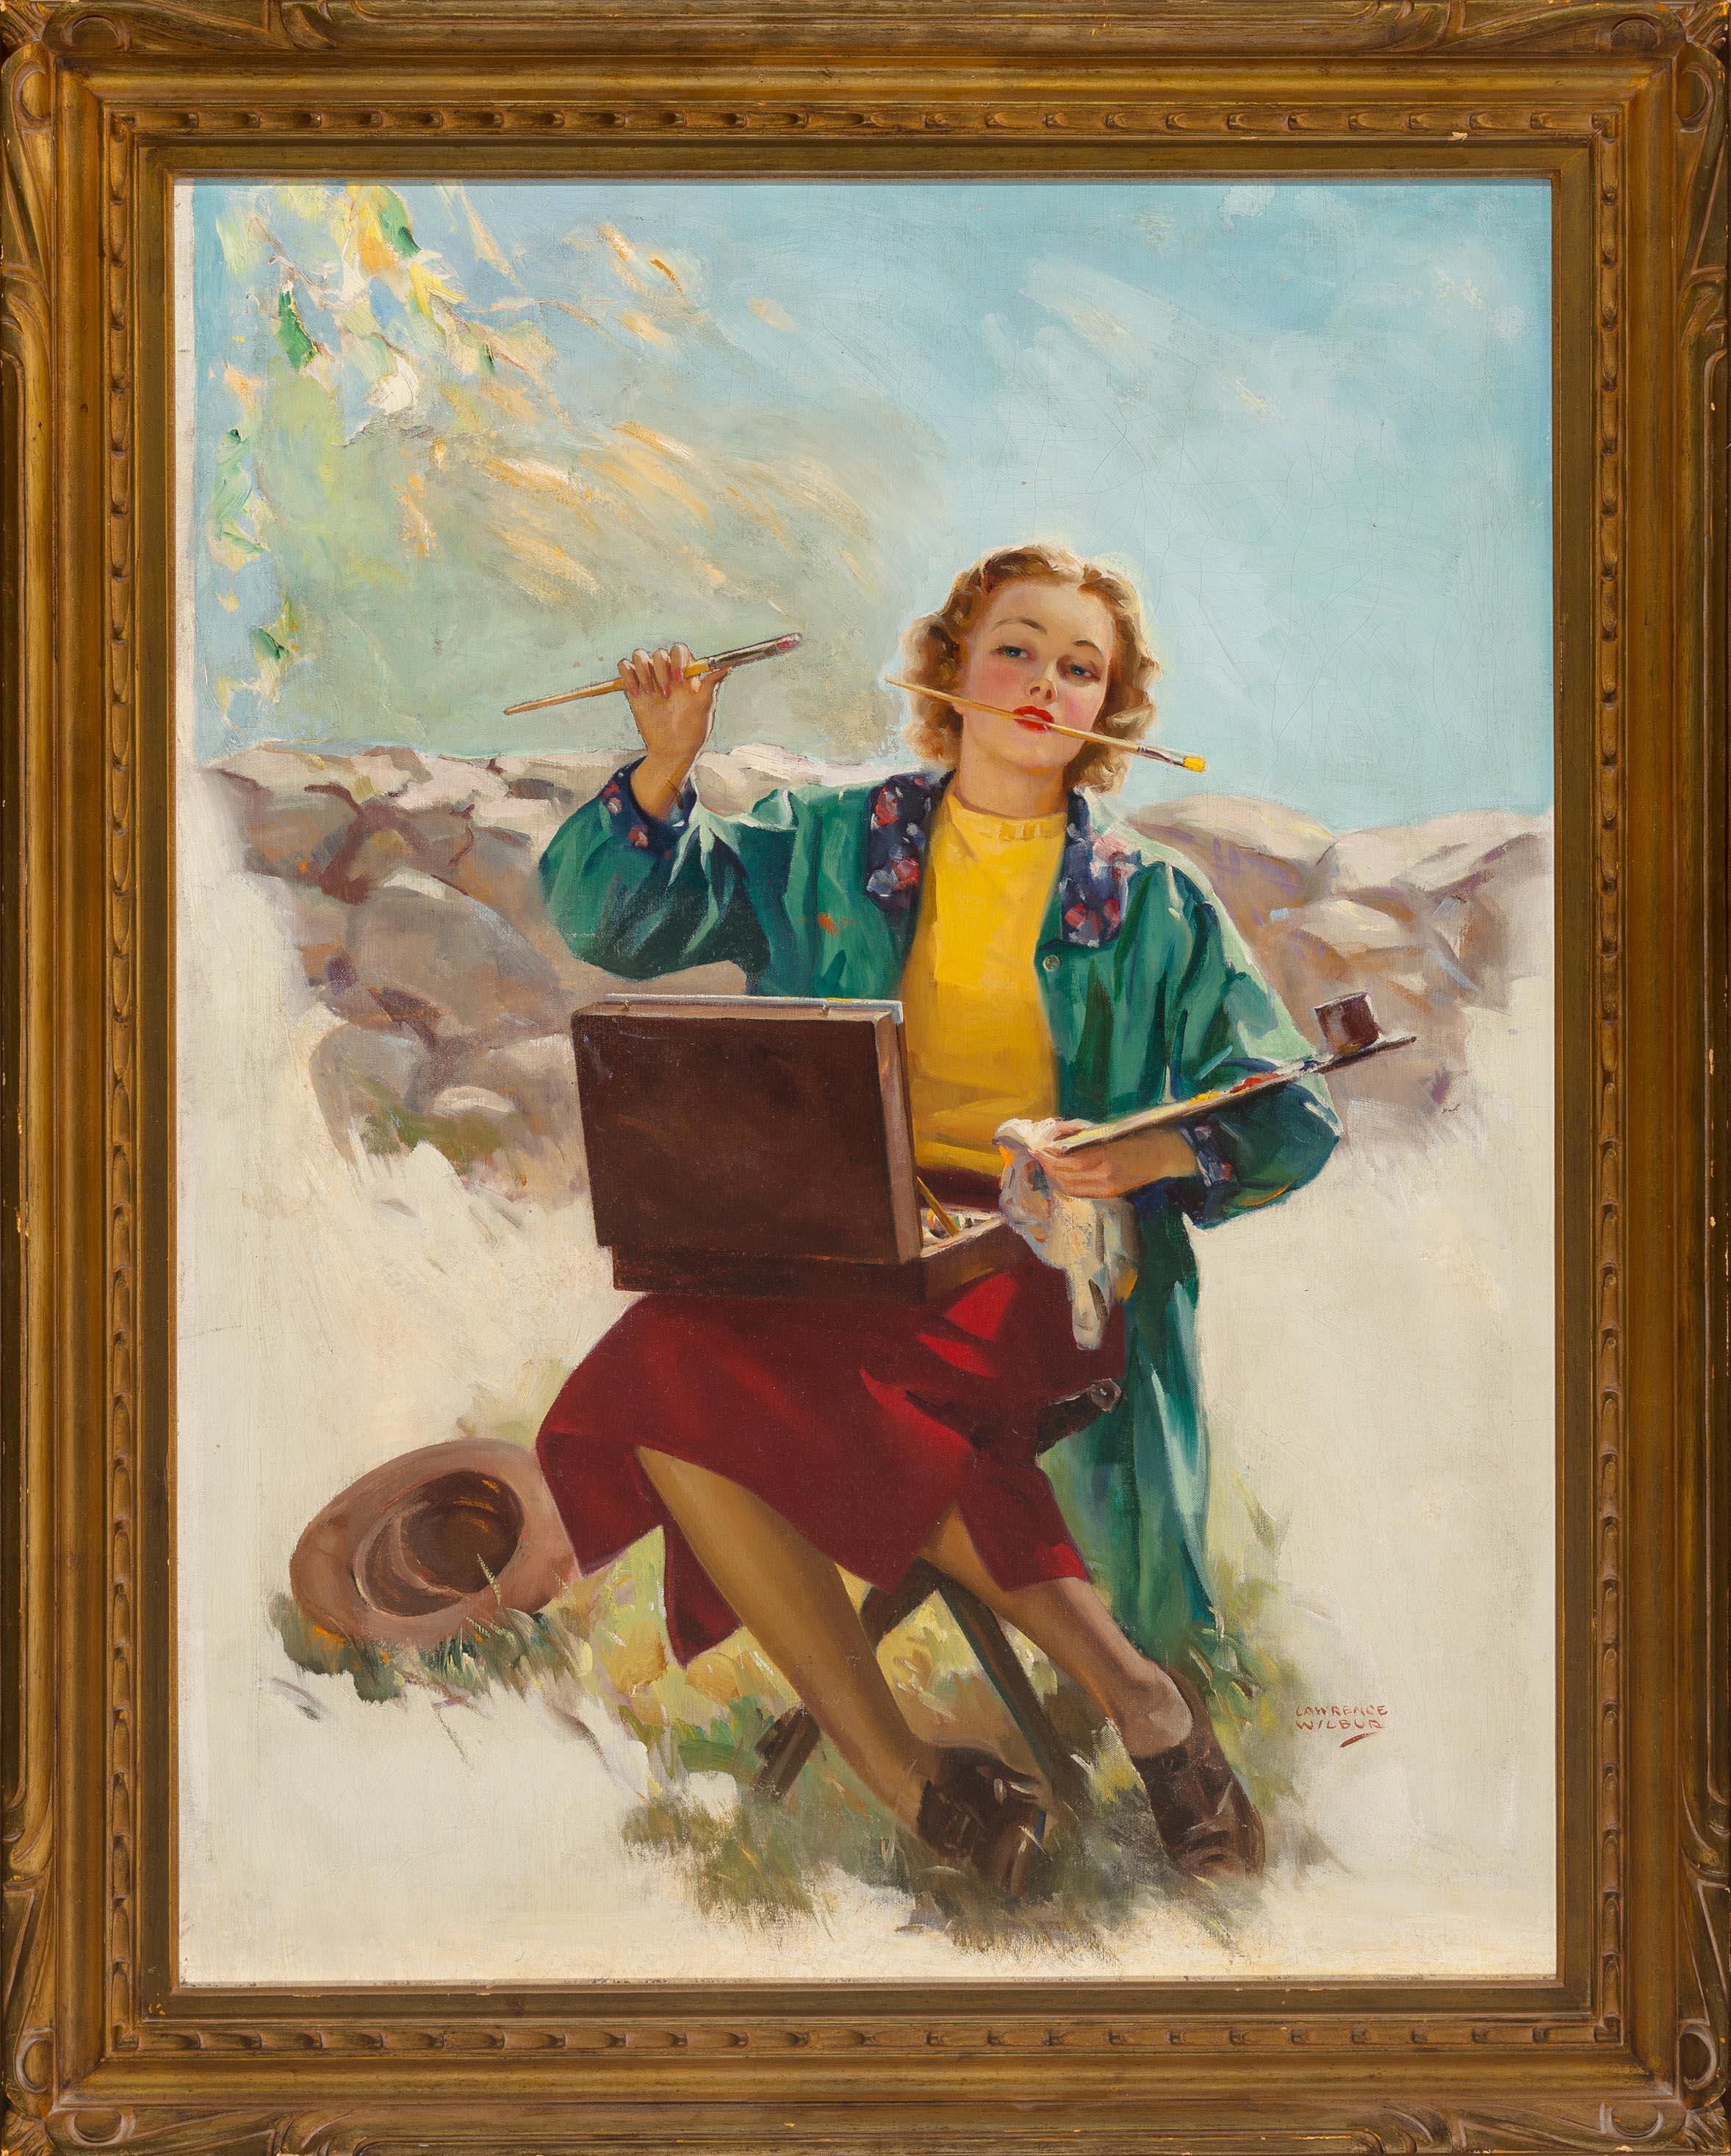 L'artiste, couverture du magazine This Week, 1937 - Painting de Lawrence Wilbur